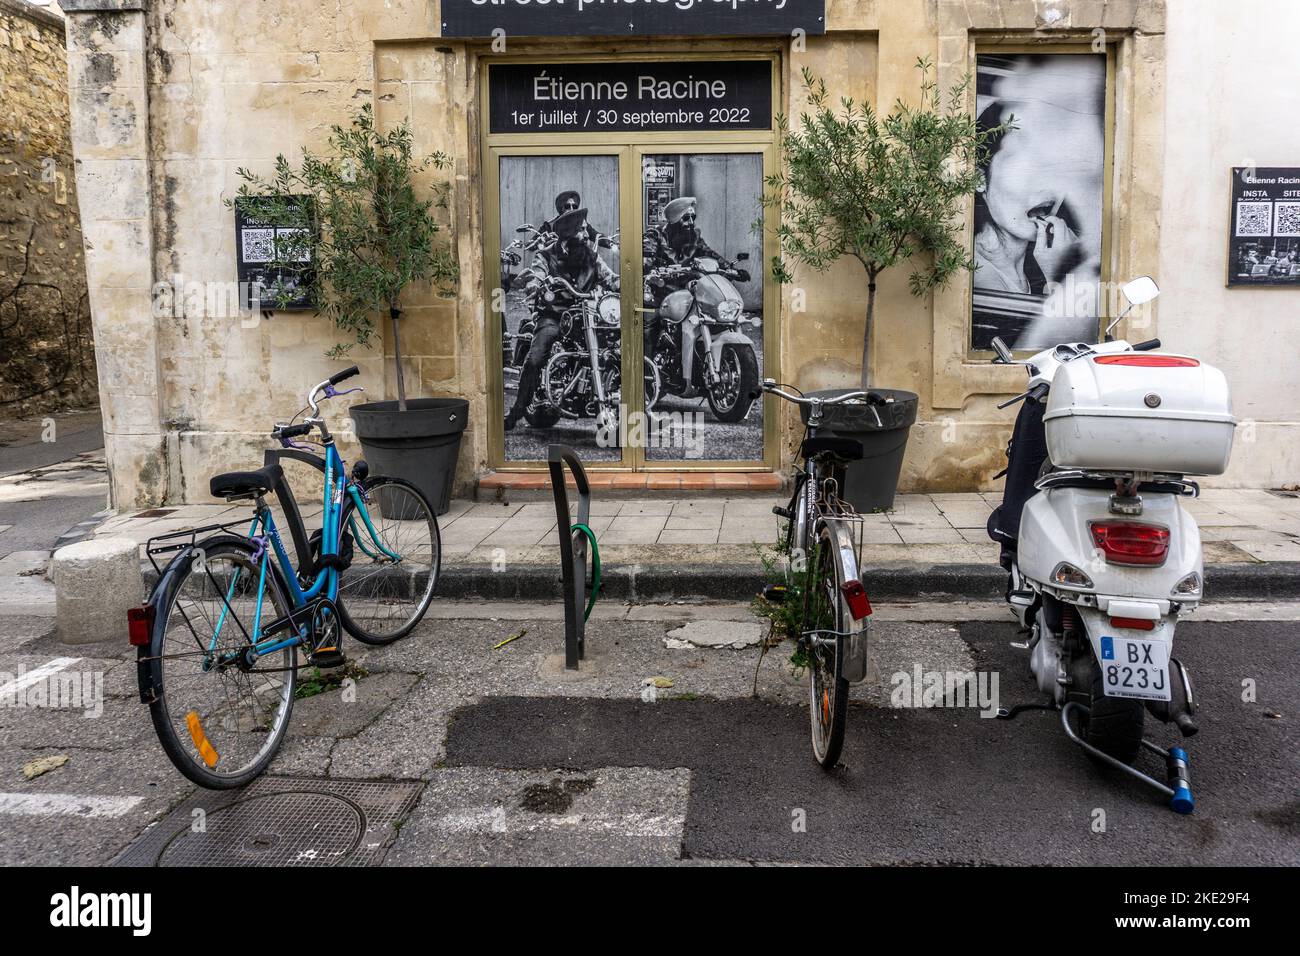 Deux vélos et un scooter garés devant une affiche d'une exposition de photographie de rue d'Etienne racine à Arles, France. Banque D'Images